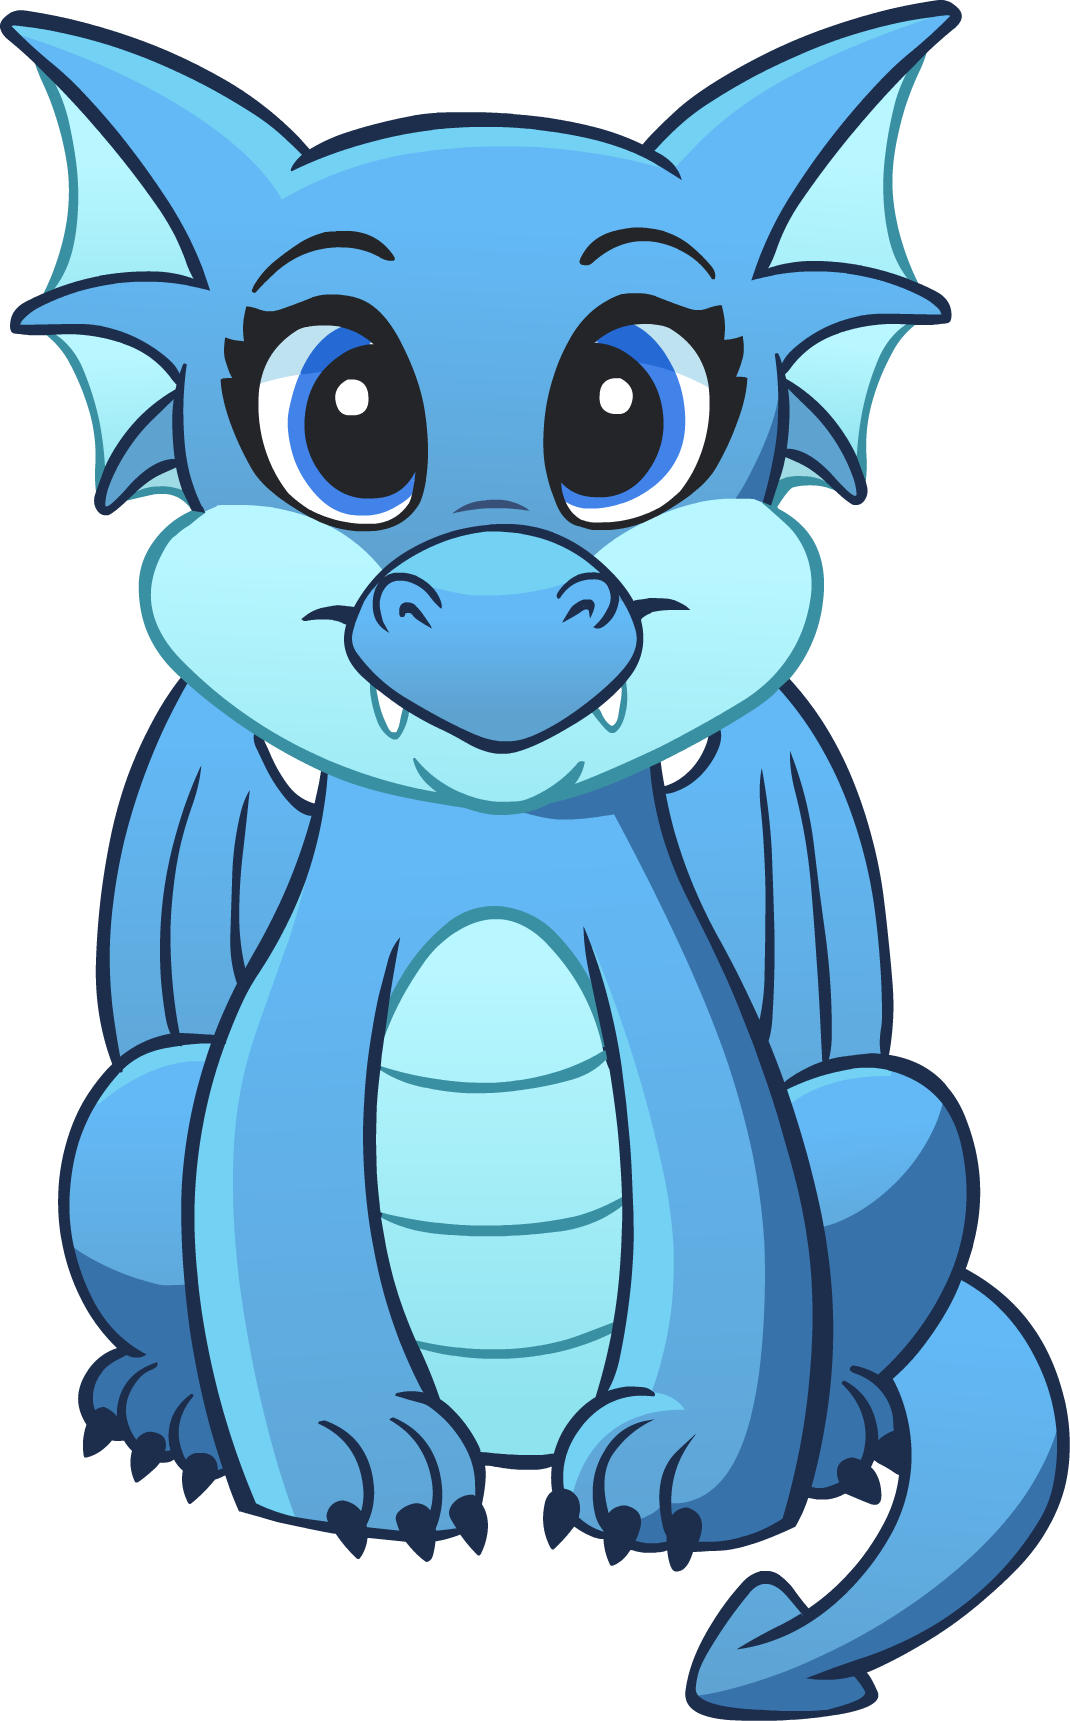 Our mascot a blue dragon